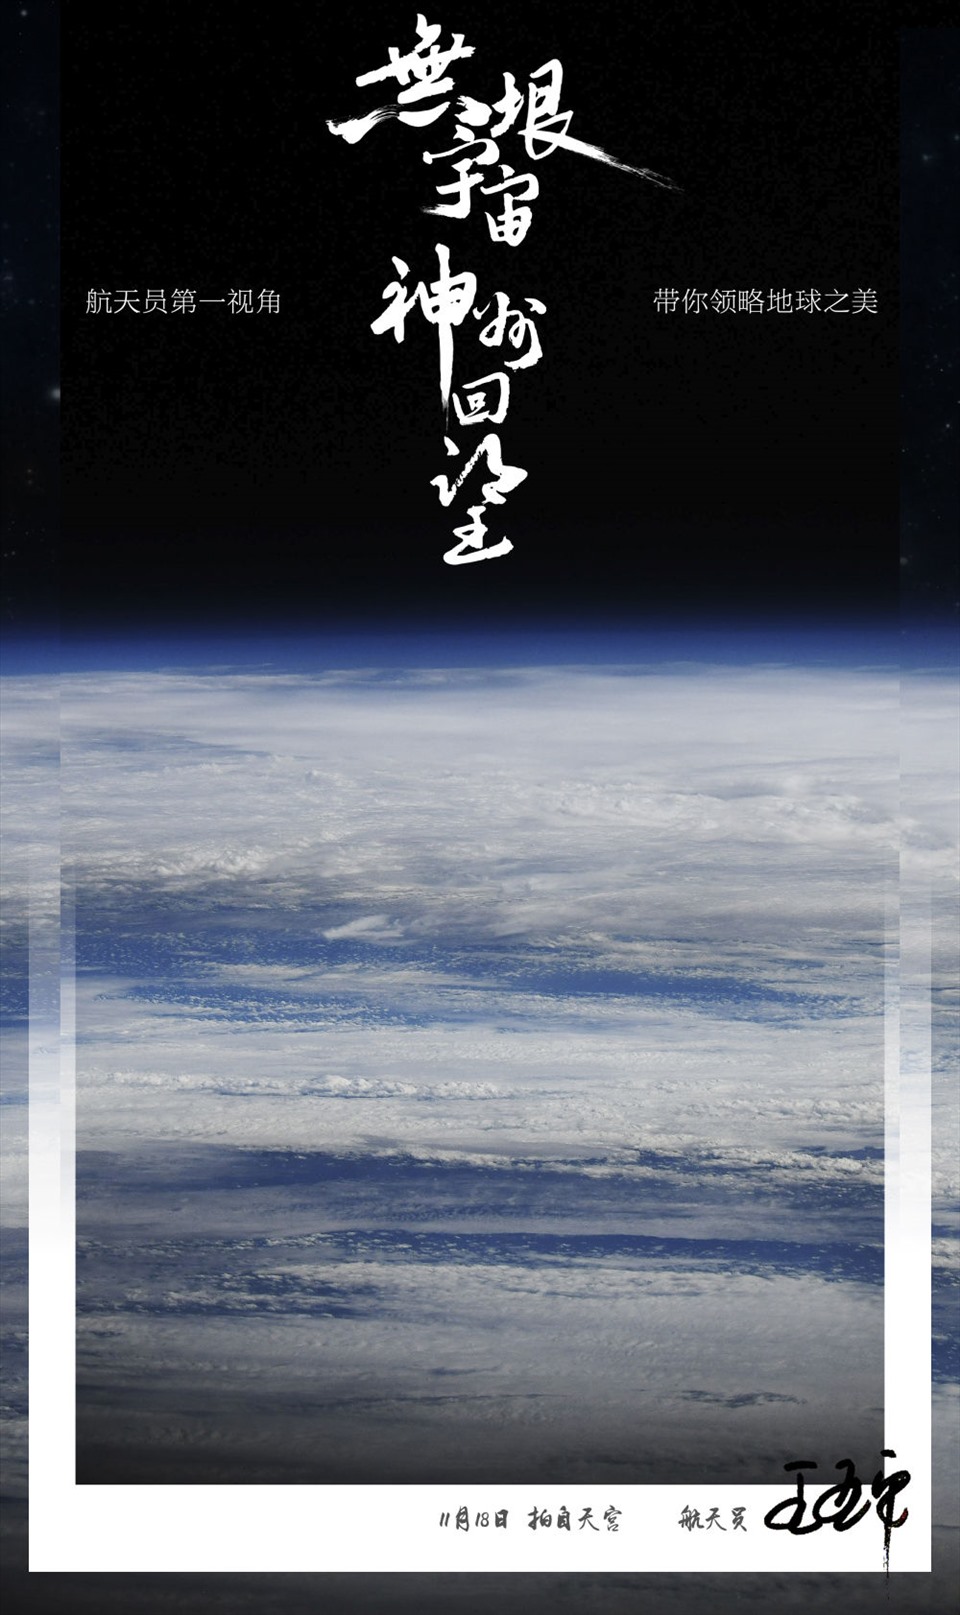 Đẹp sững sờ ảnh Trái đất chụp từ Trạm vũ trụ Thiên Cung của Trung Quốc